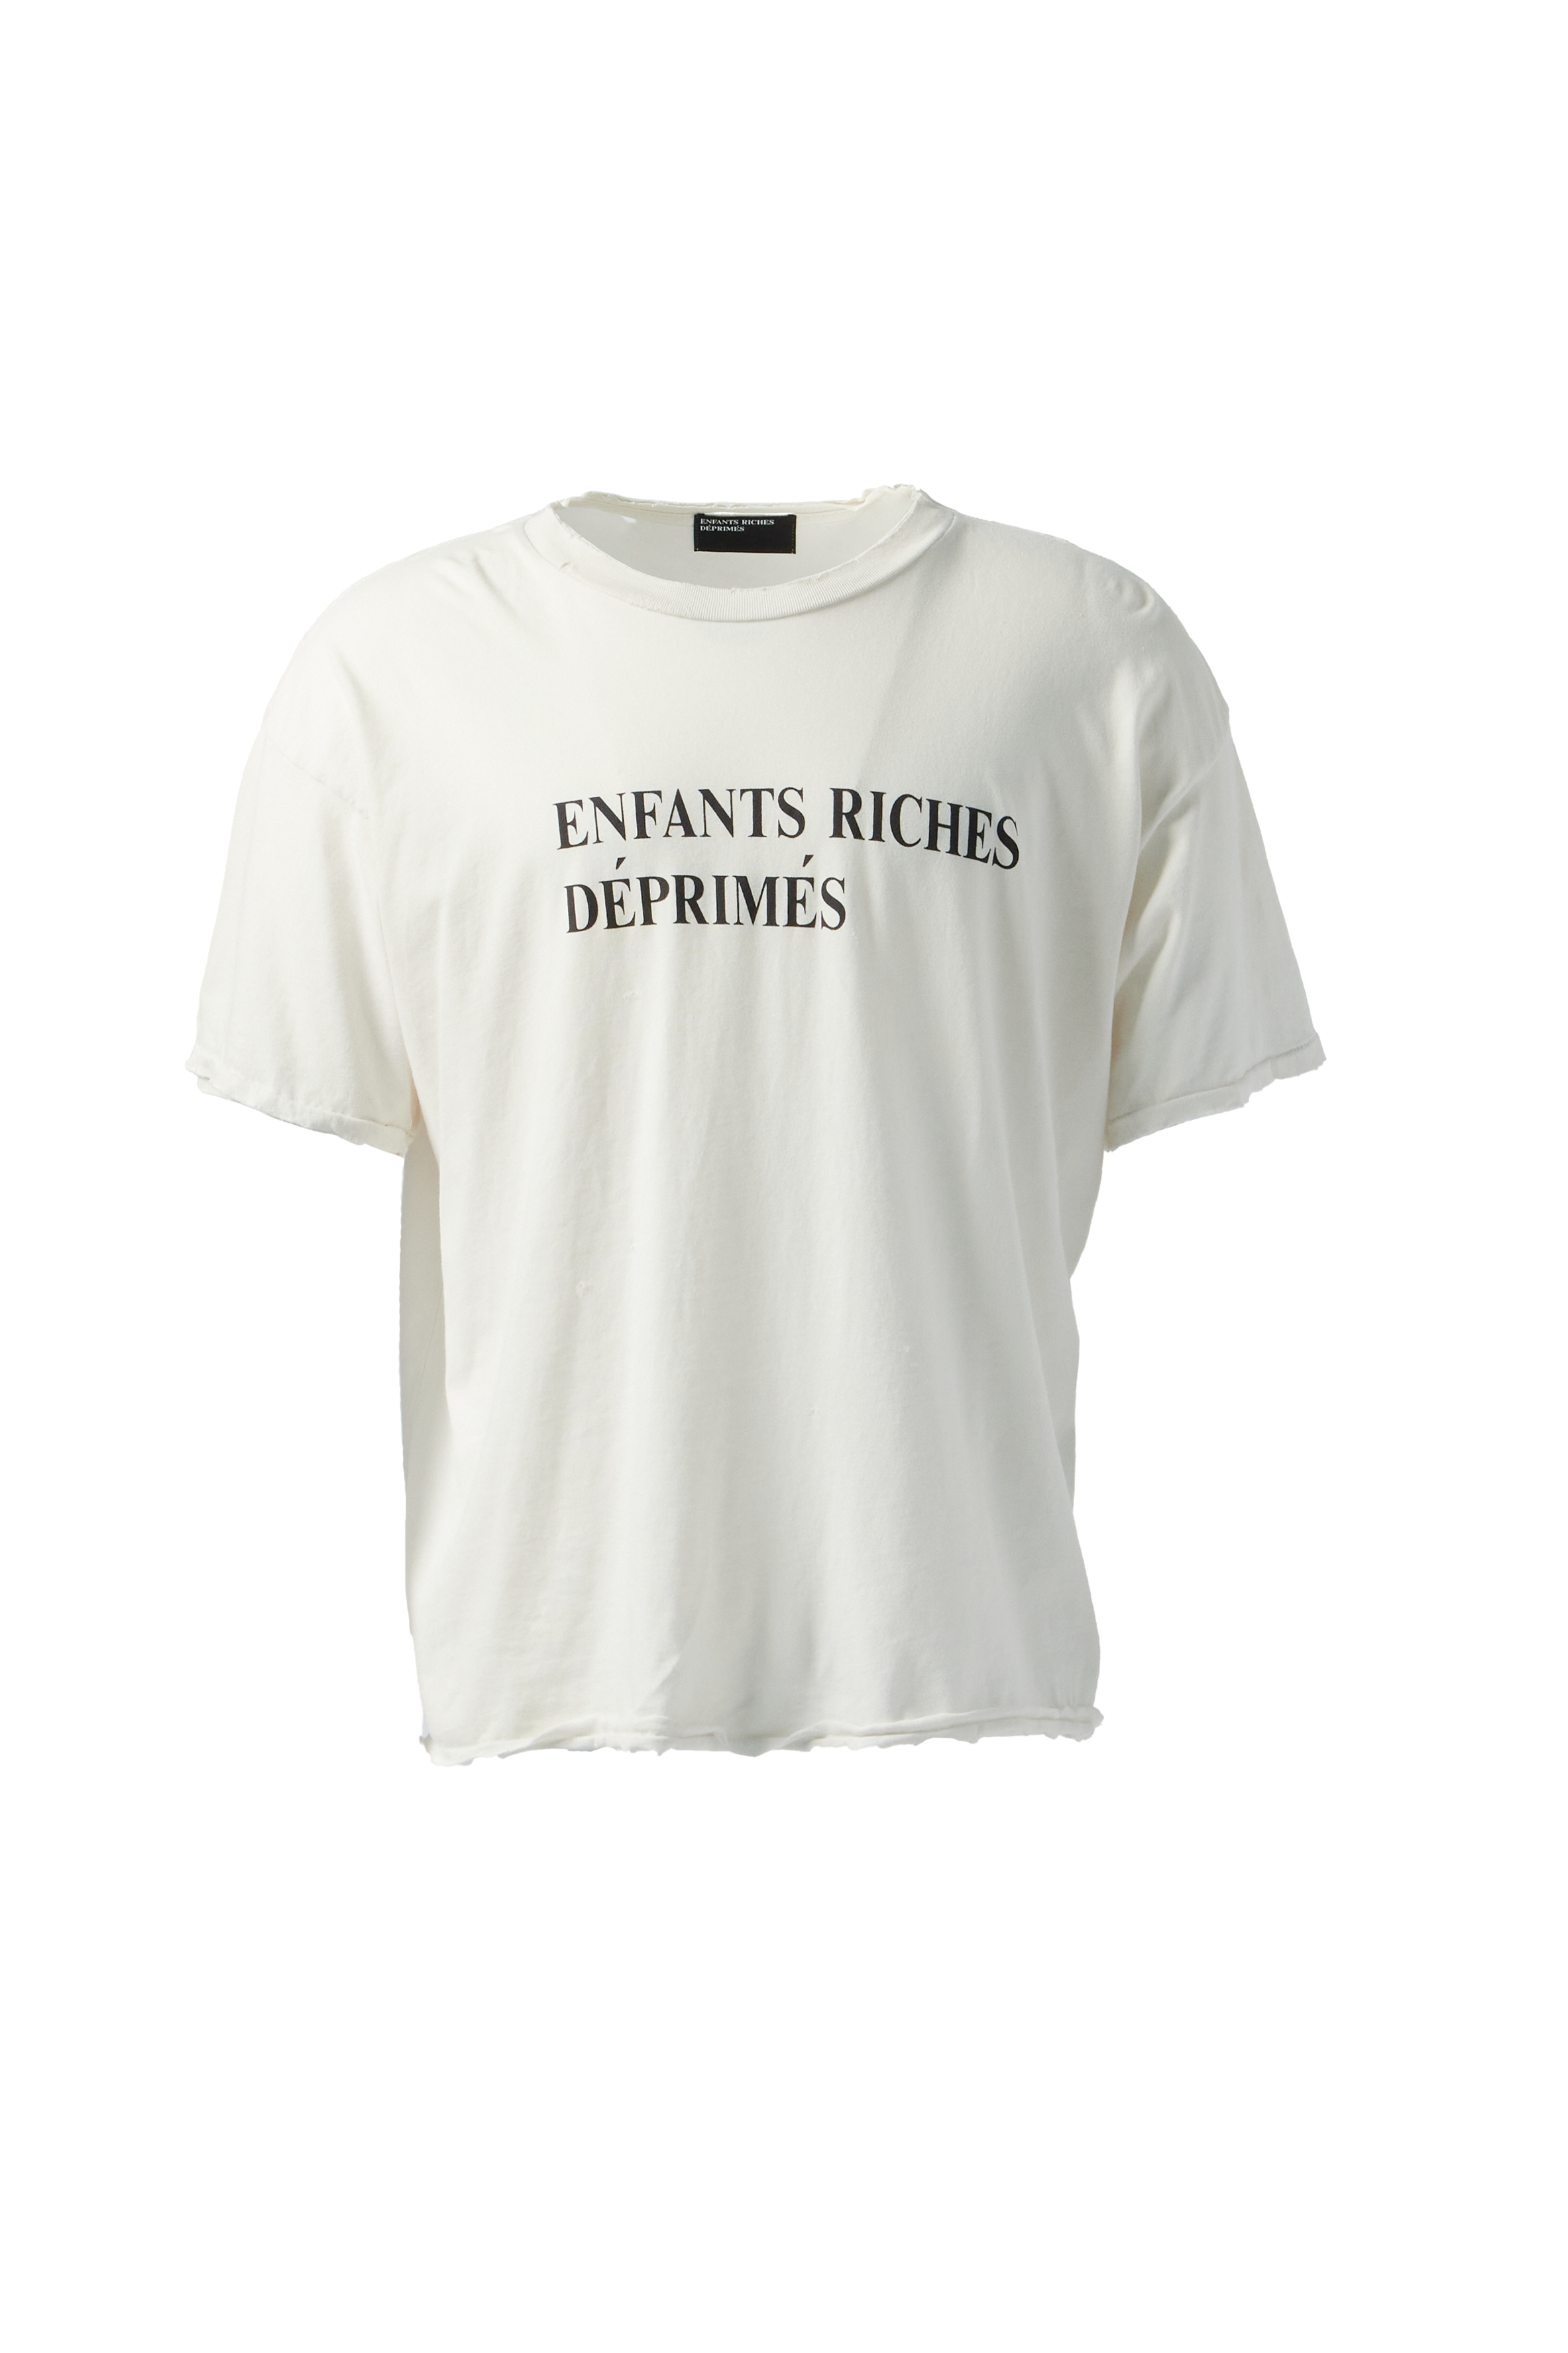 ENFANTS RICHES DÉPRIMÉS - Classic Logo T-Shirt product image